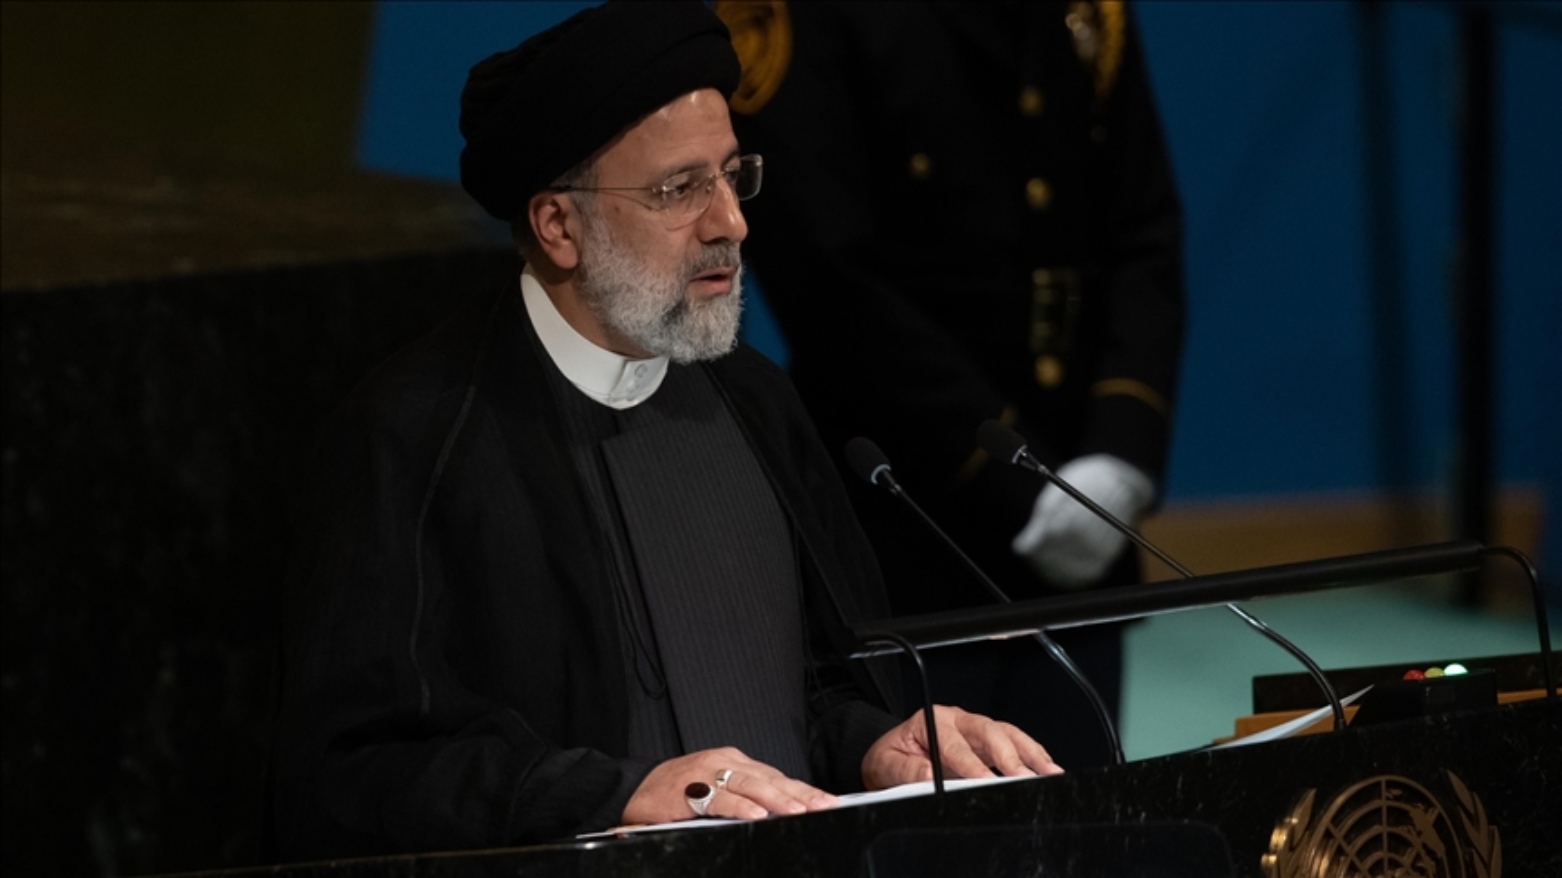 سخنرانی ابراهیم رئیسی رئیس جمهوری ایران در مجمع عمومی سازمان ملل متحد